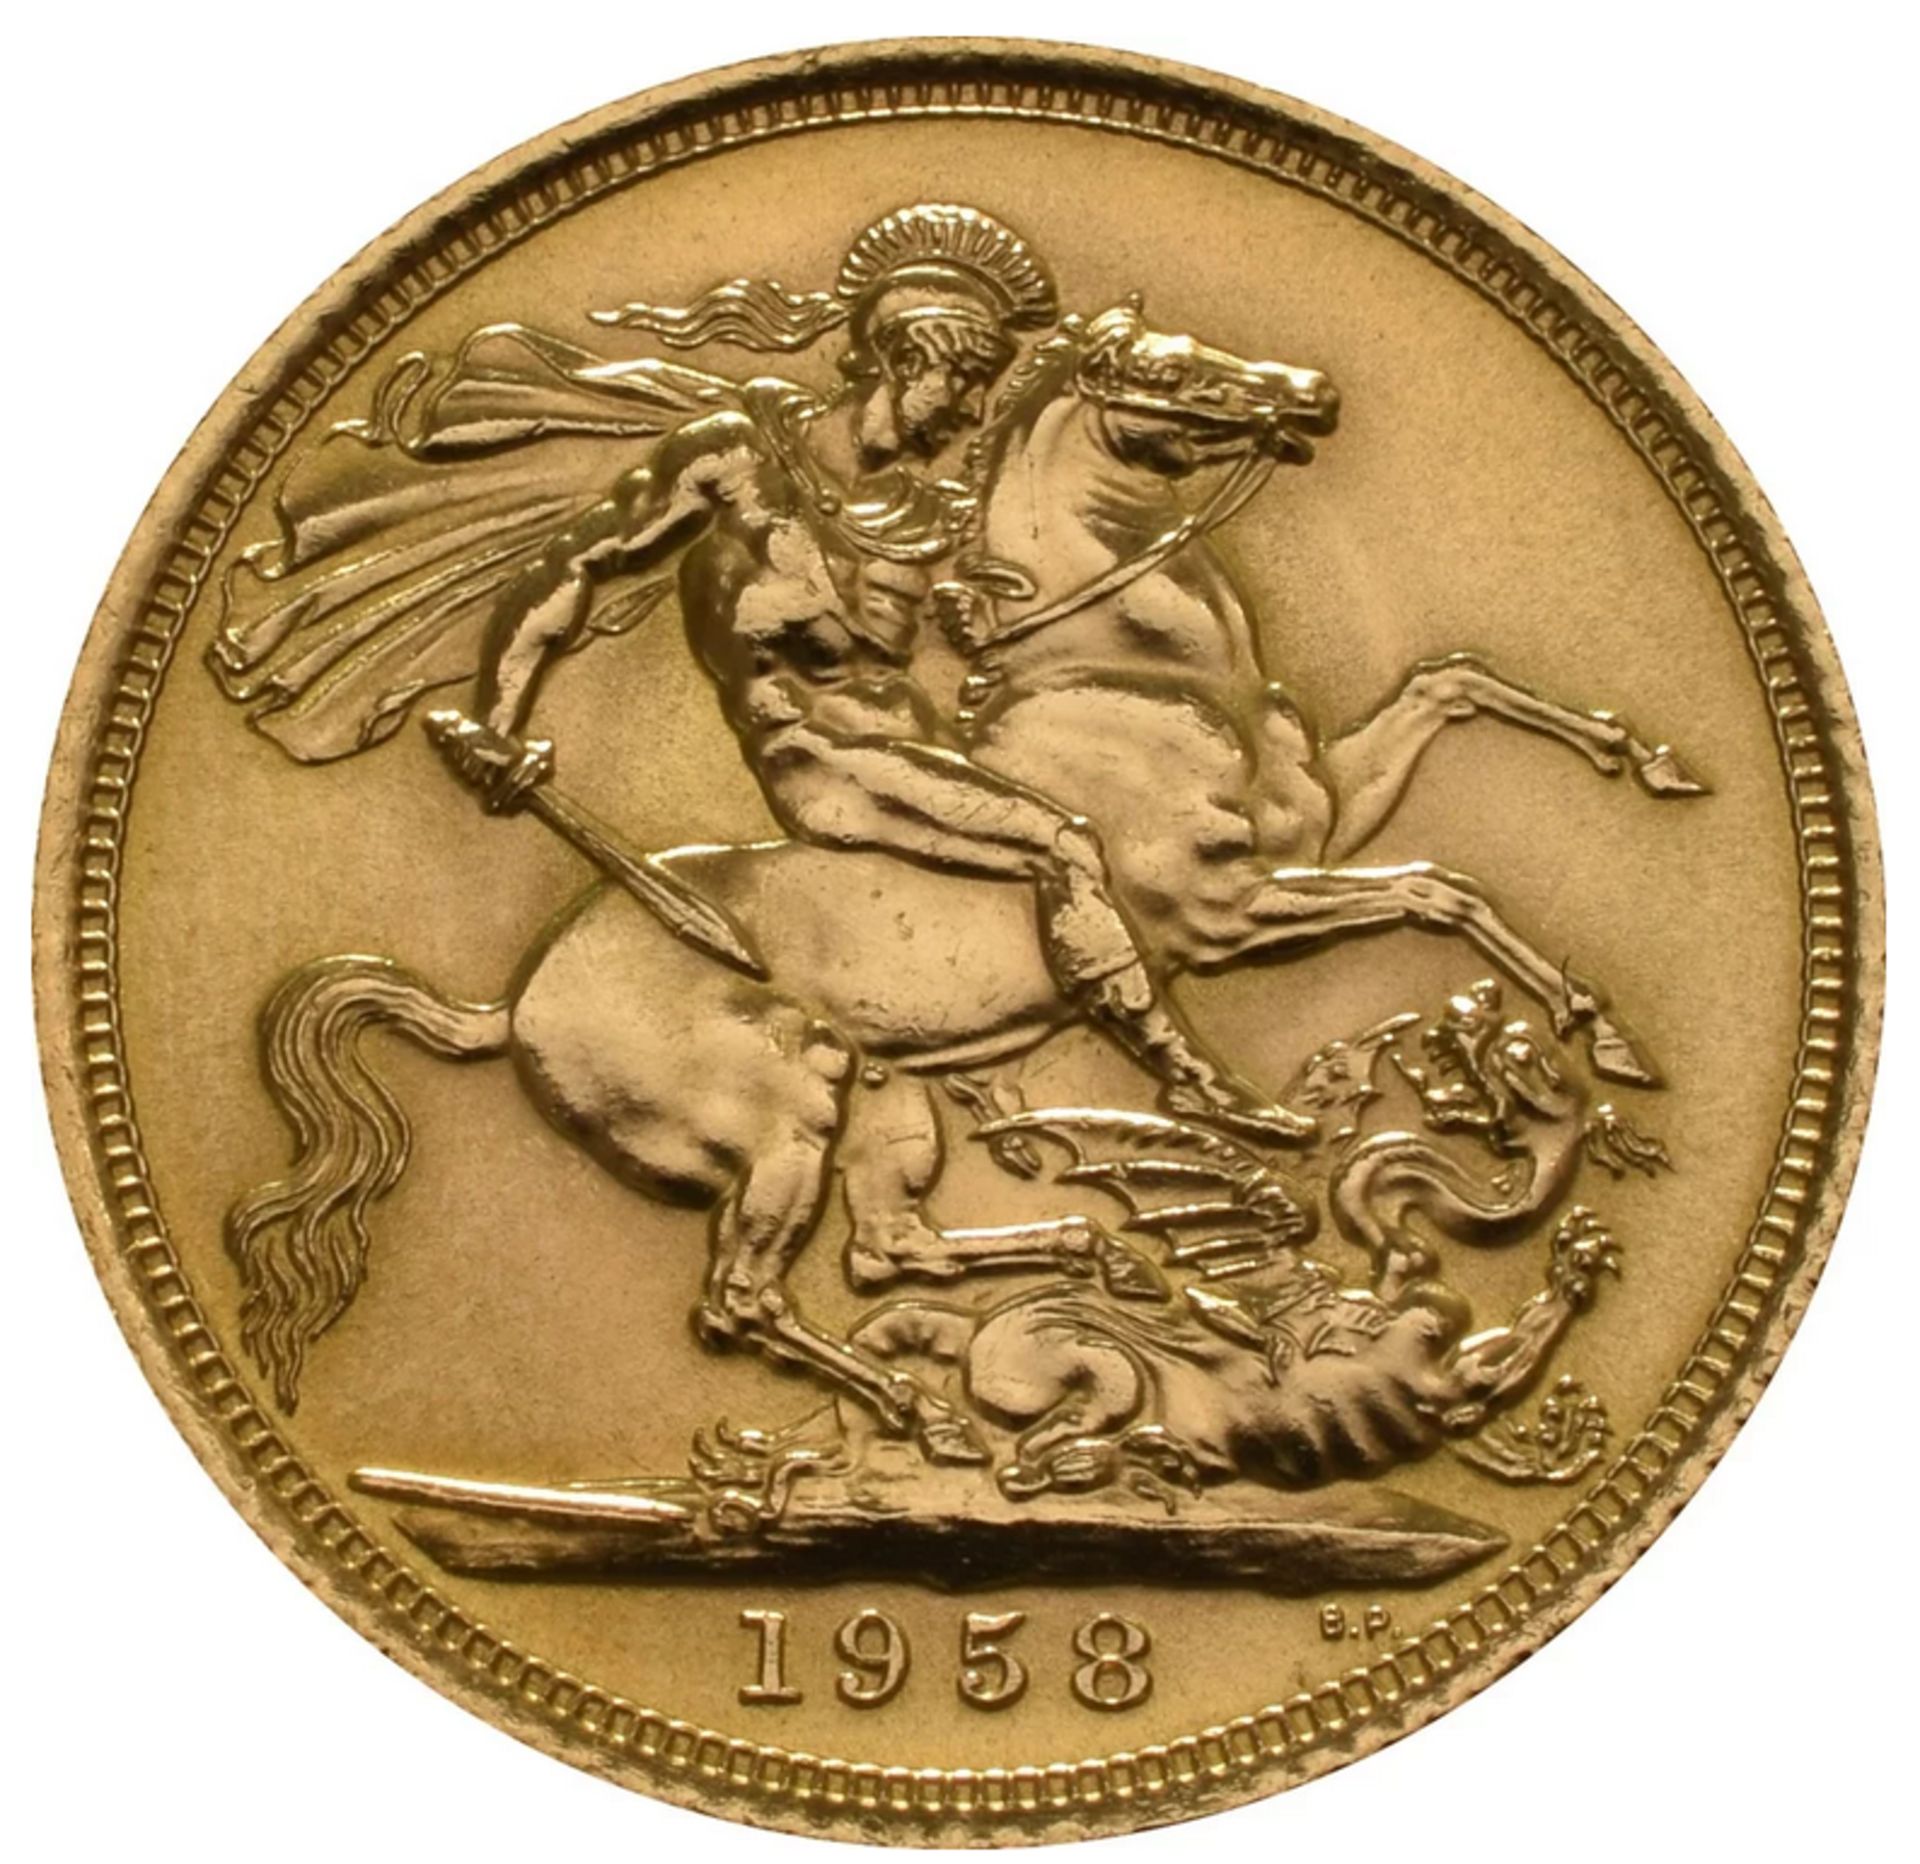 1958 - Queen Elizebeth - Gold Sovereign.